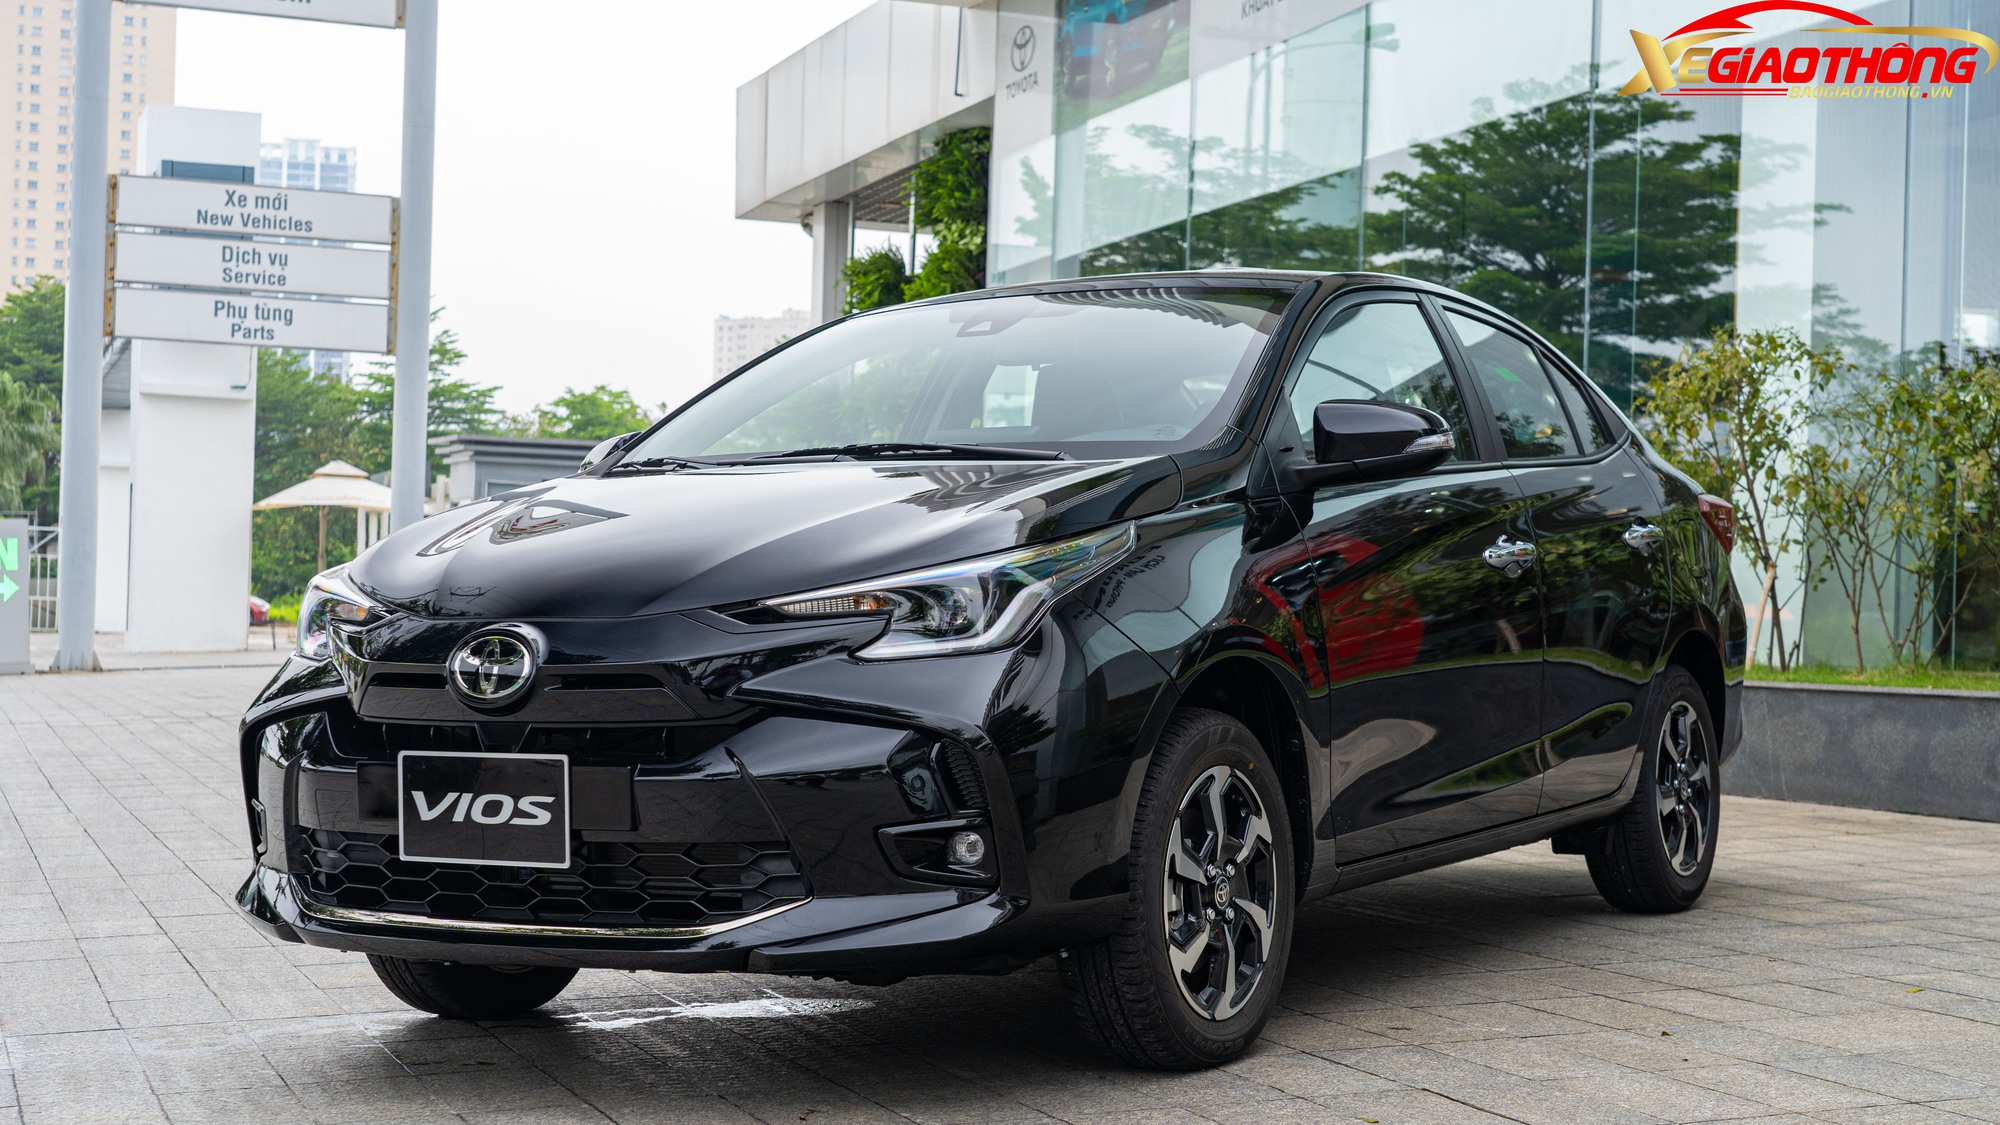 Toyota Vios giảm giá tại đại lý nhiều hơn chương trình hãng - Ảnh 3.